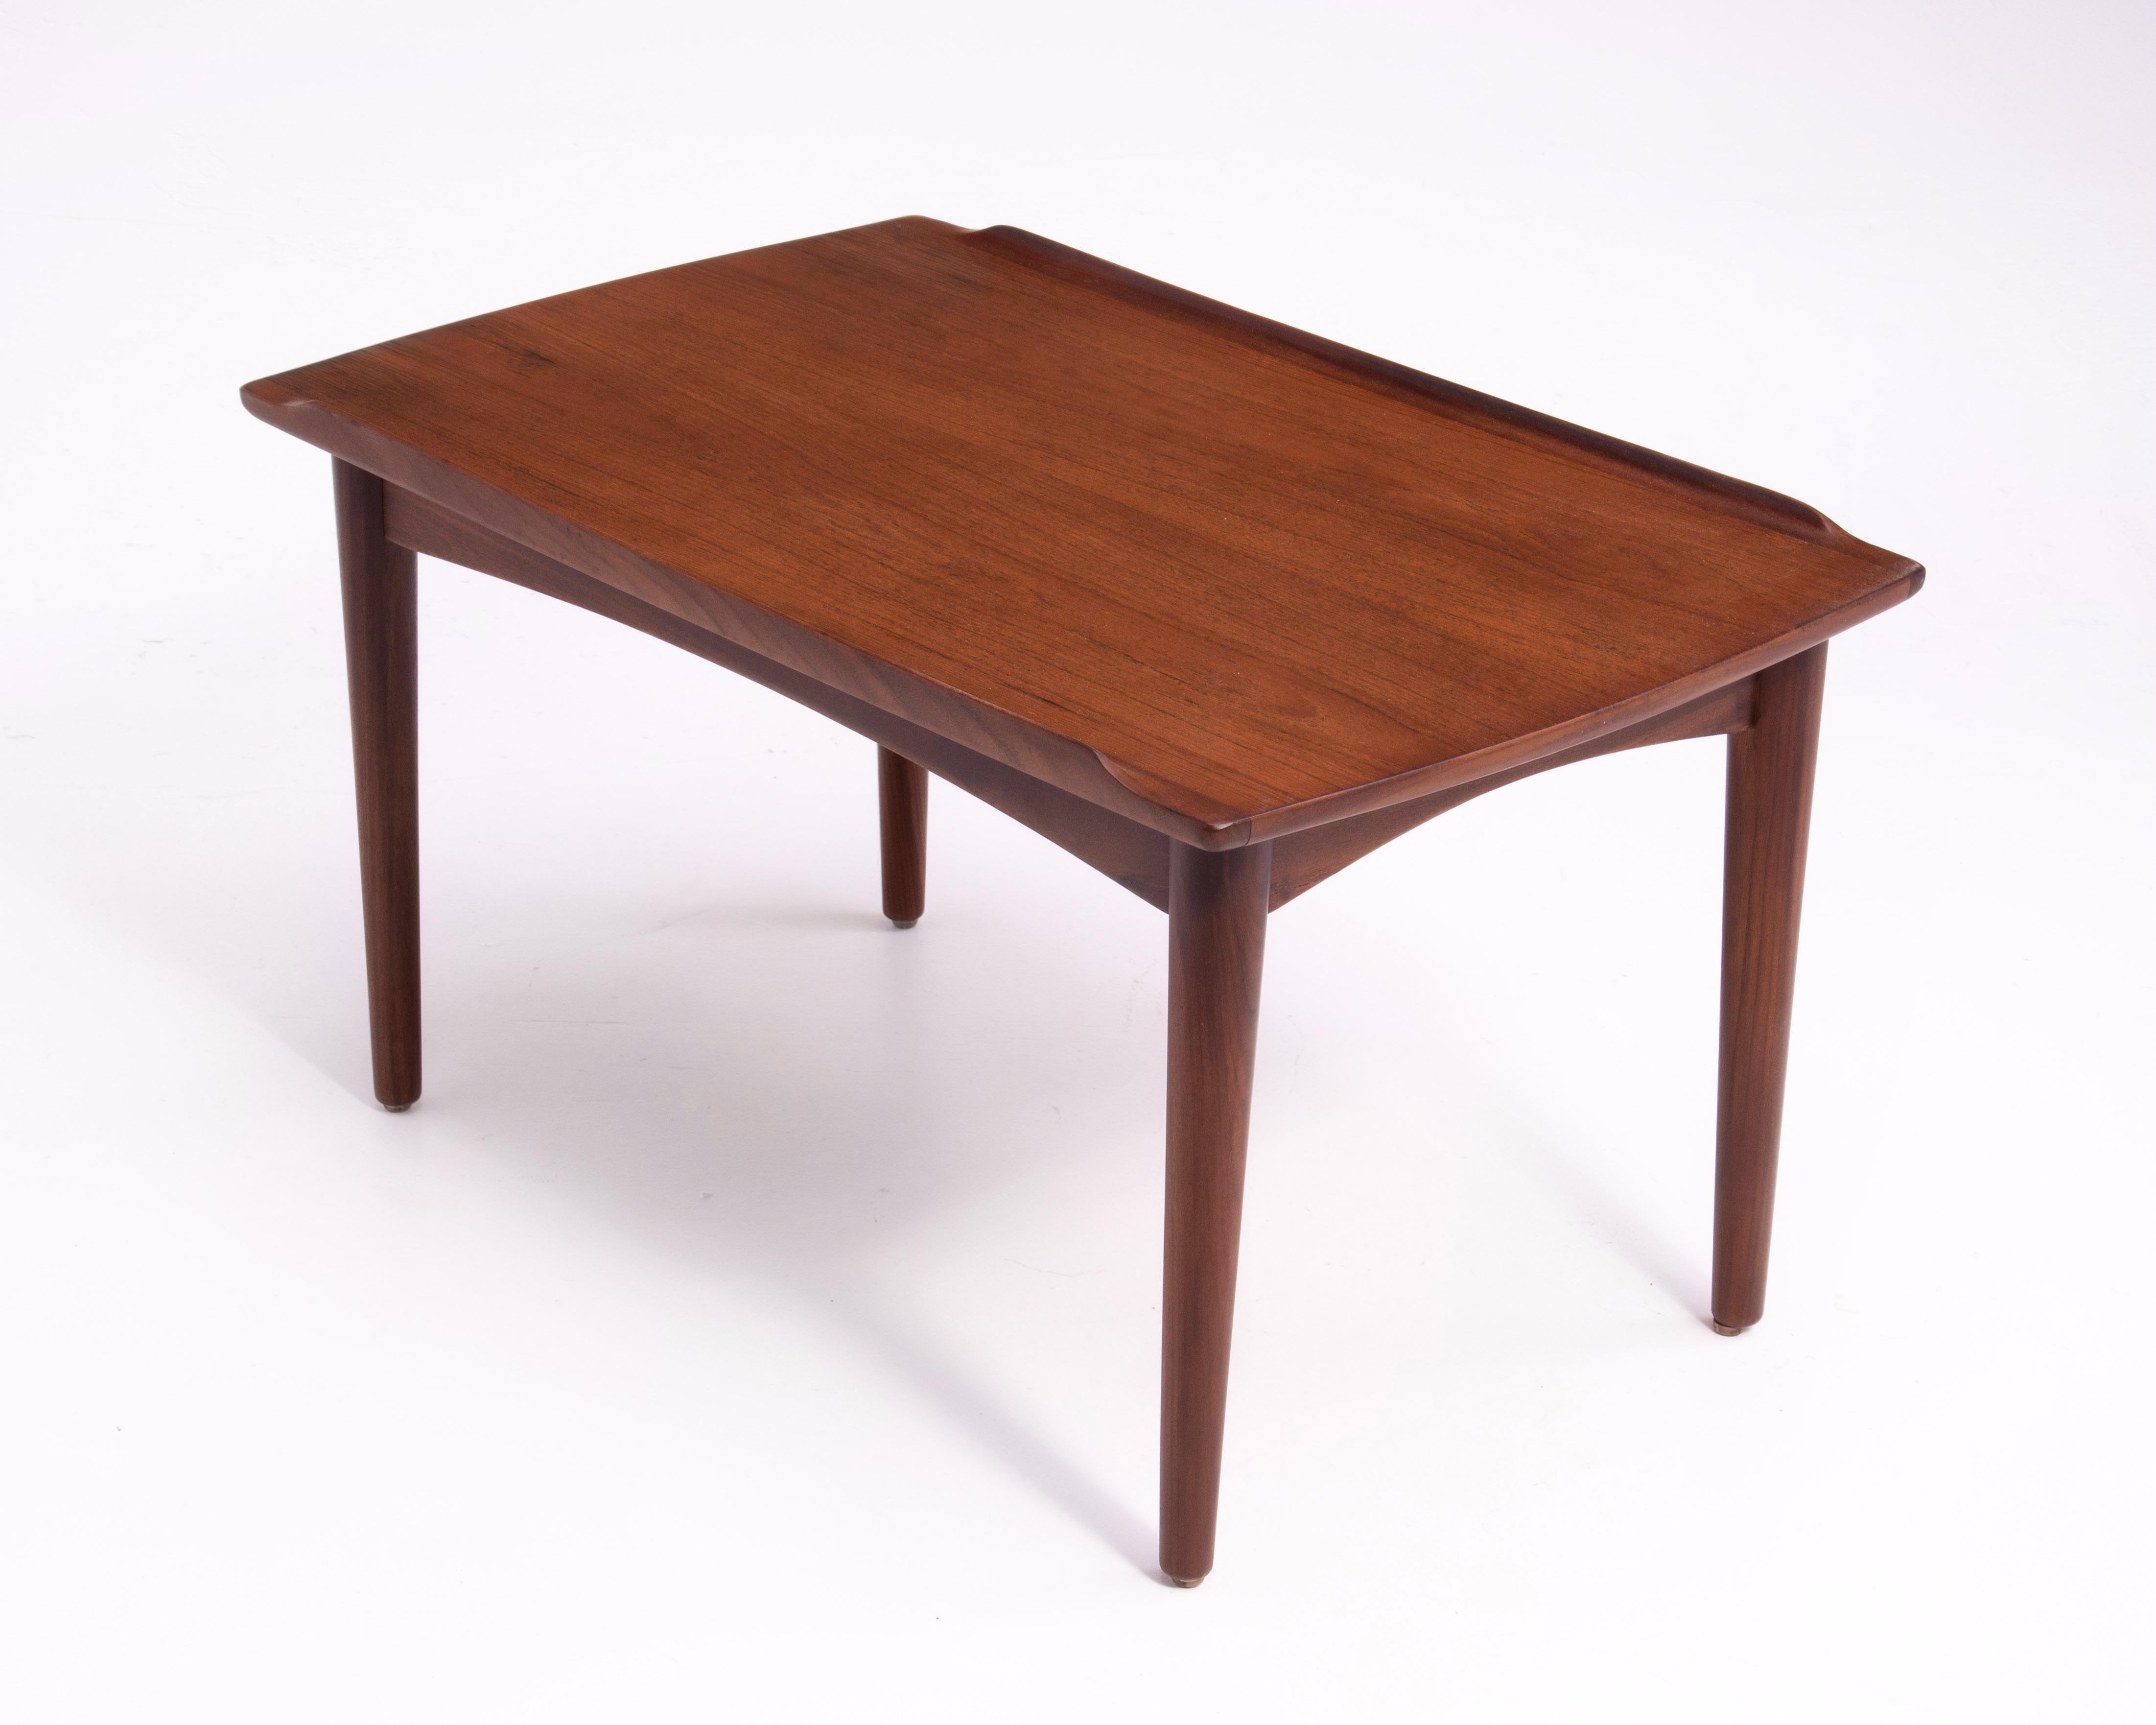 Danish Modern Teak Dowel Leg Side Table After Grete Jalk Marked B. J. 1970s For Sale 2